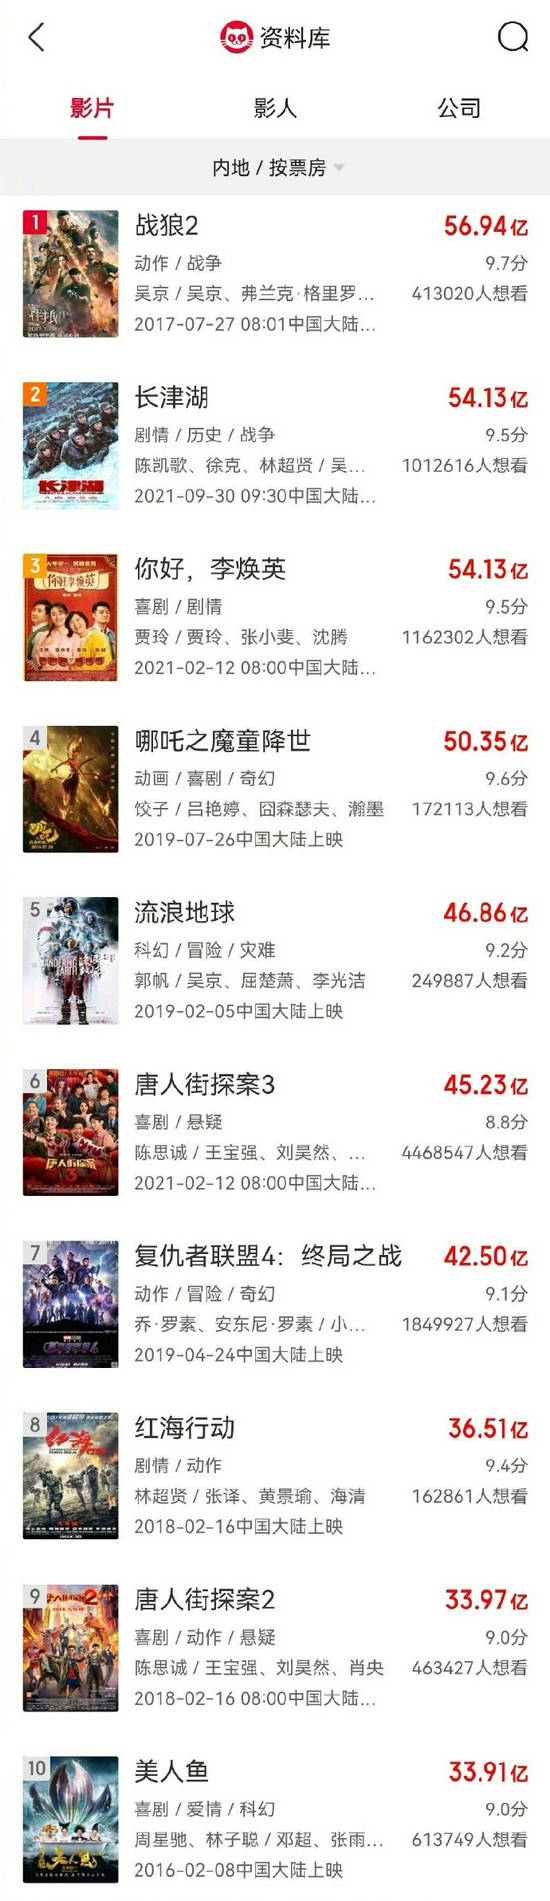 《长津湖》暂列中国影史票房榜第二名